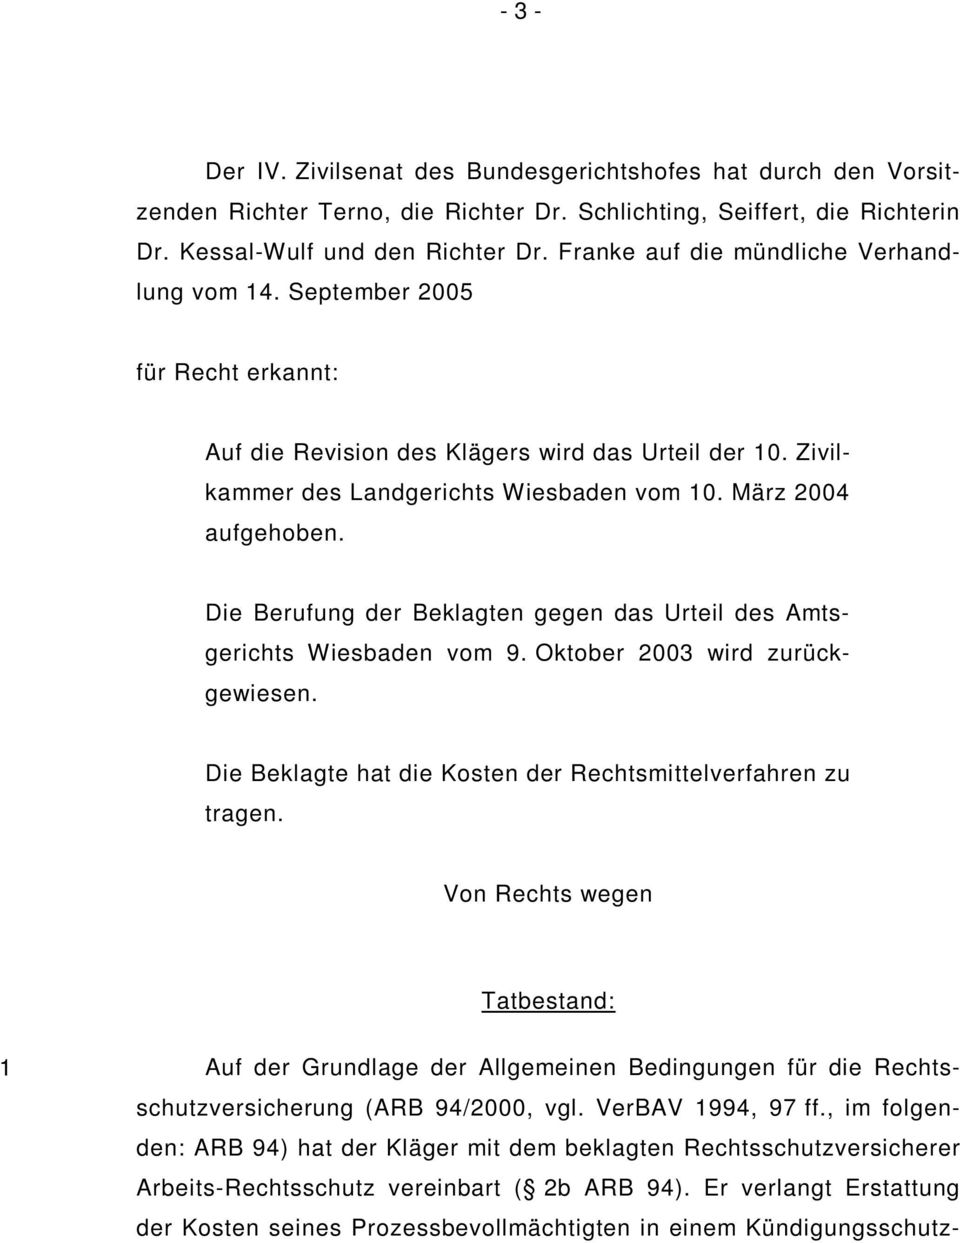 Die Berufung der Beklagten gegen das Urteil des Amtsgerichts Wiesbaden vom 9. Oktober 2003 wird zurückgewiesen. Die Beklagte hat die Kosten der Rechtsmittelverfahren zu tragen.